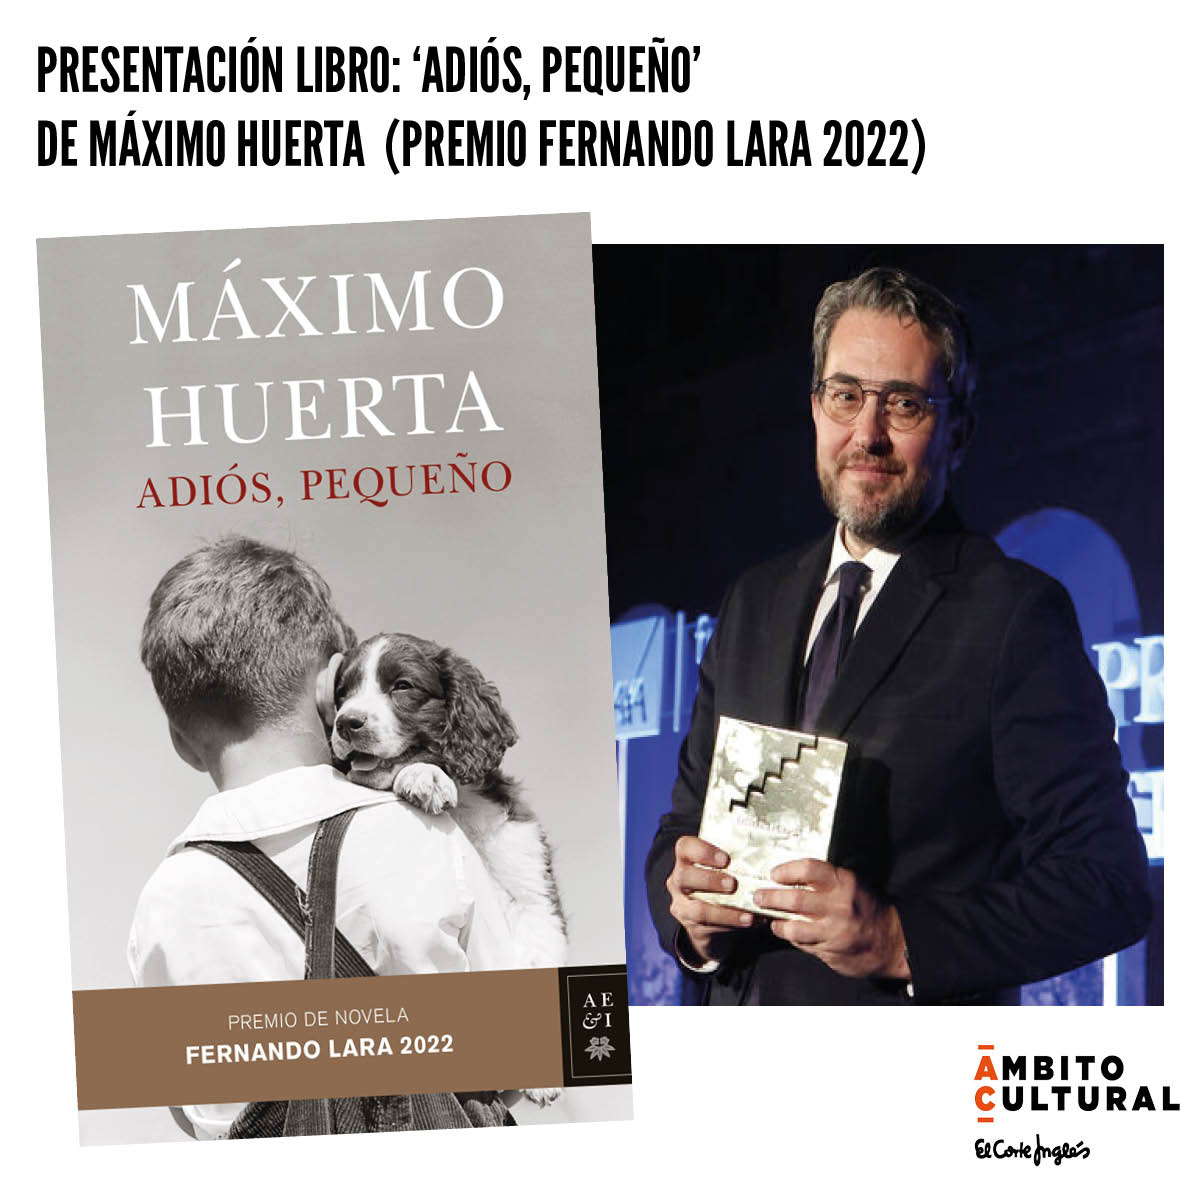 PRESENTACIÓN PREMIO FERNANDO LARA 2022: MÁXIMO HUERTA